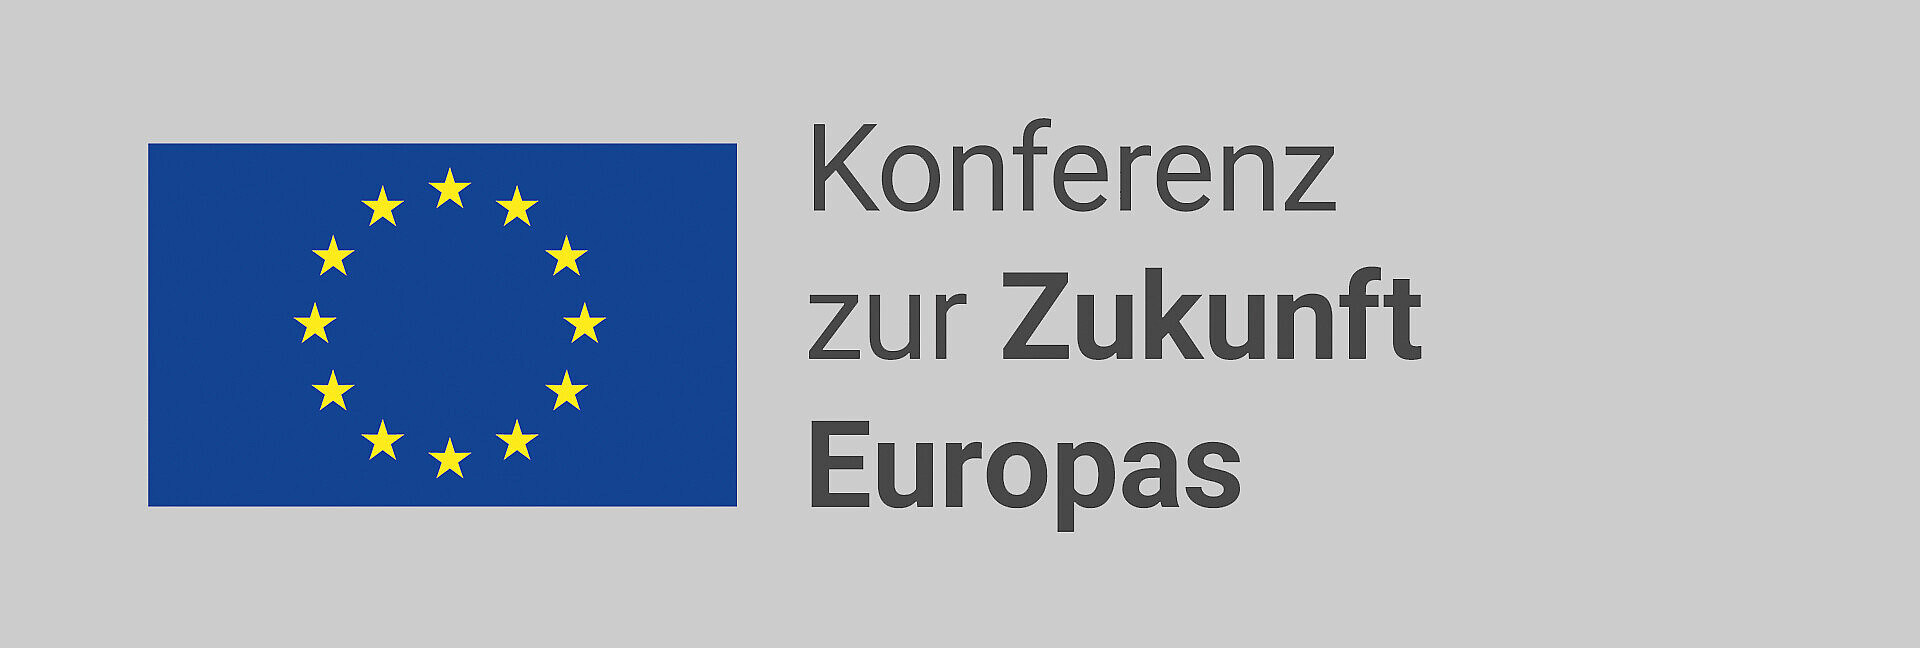 Das Bild zeigt die EU Flagge, ein blaues Rechteck mit 12 kreisförmig angeordneten Sternen auf der linken Hälfte des Bildes. Auf der rechten Bildhälfte steht groß in schwarzer Schrift „Konferenz zur Zukunft Europas“, auf grauem Hintergrund. 